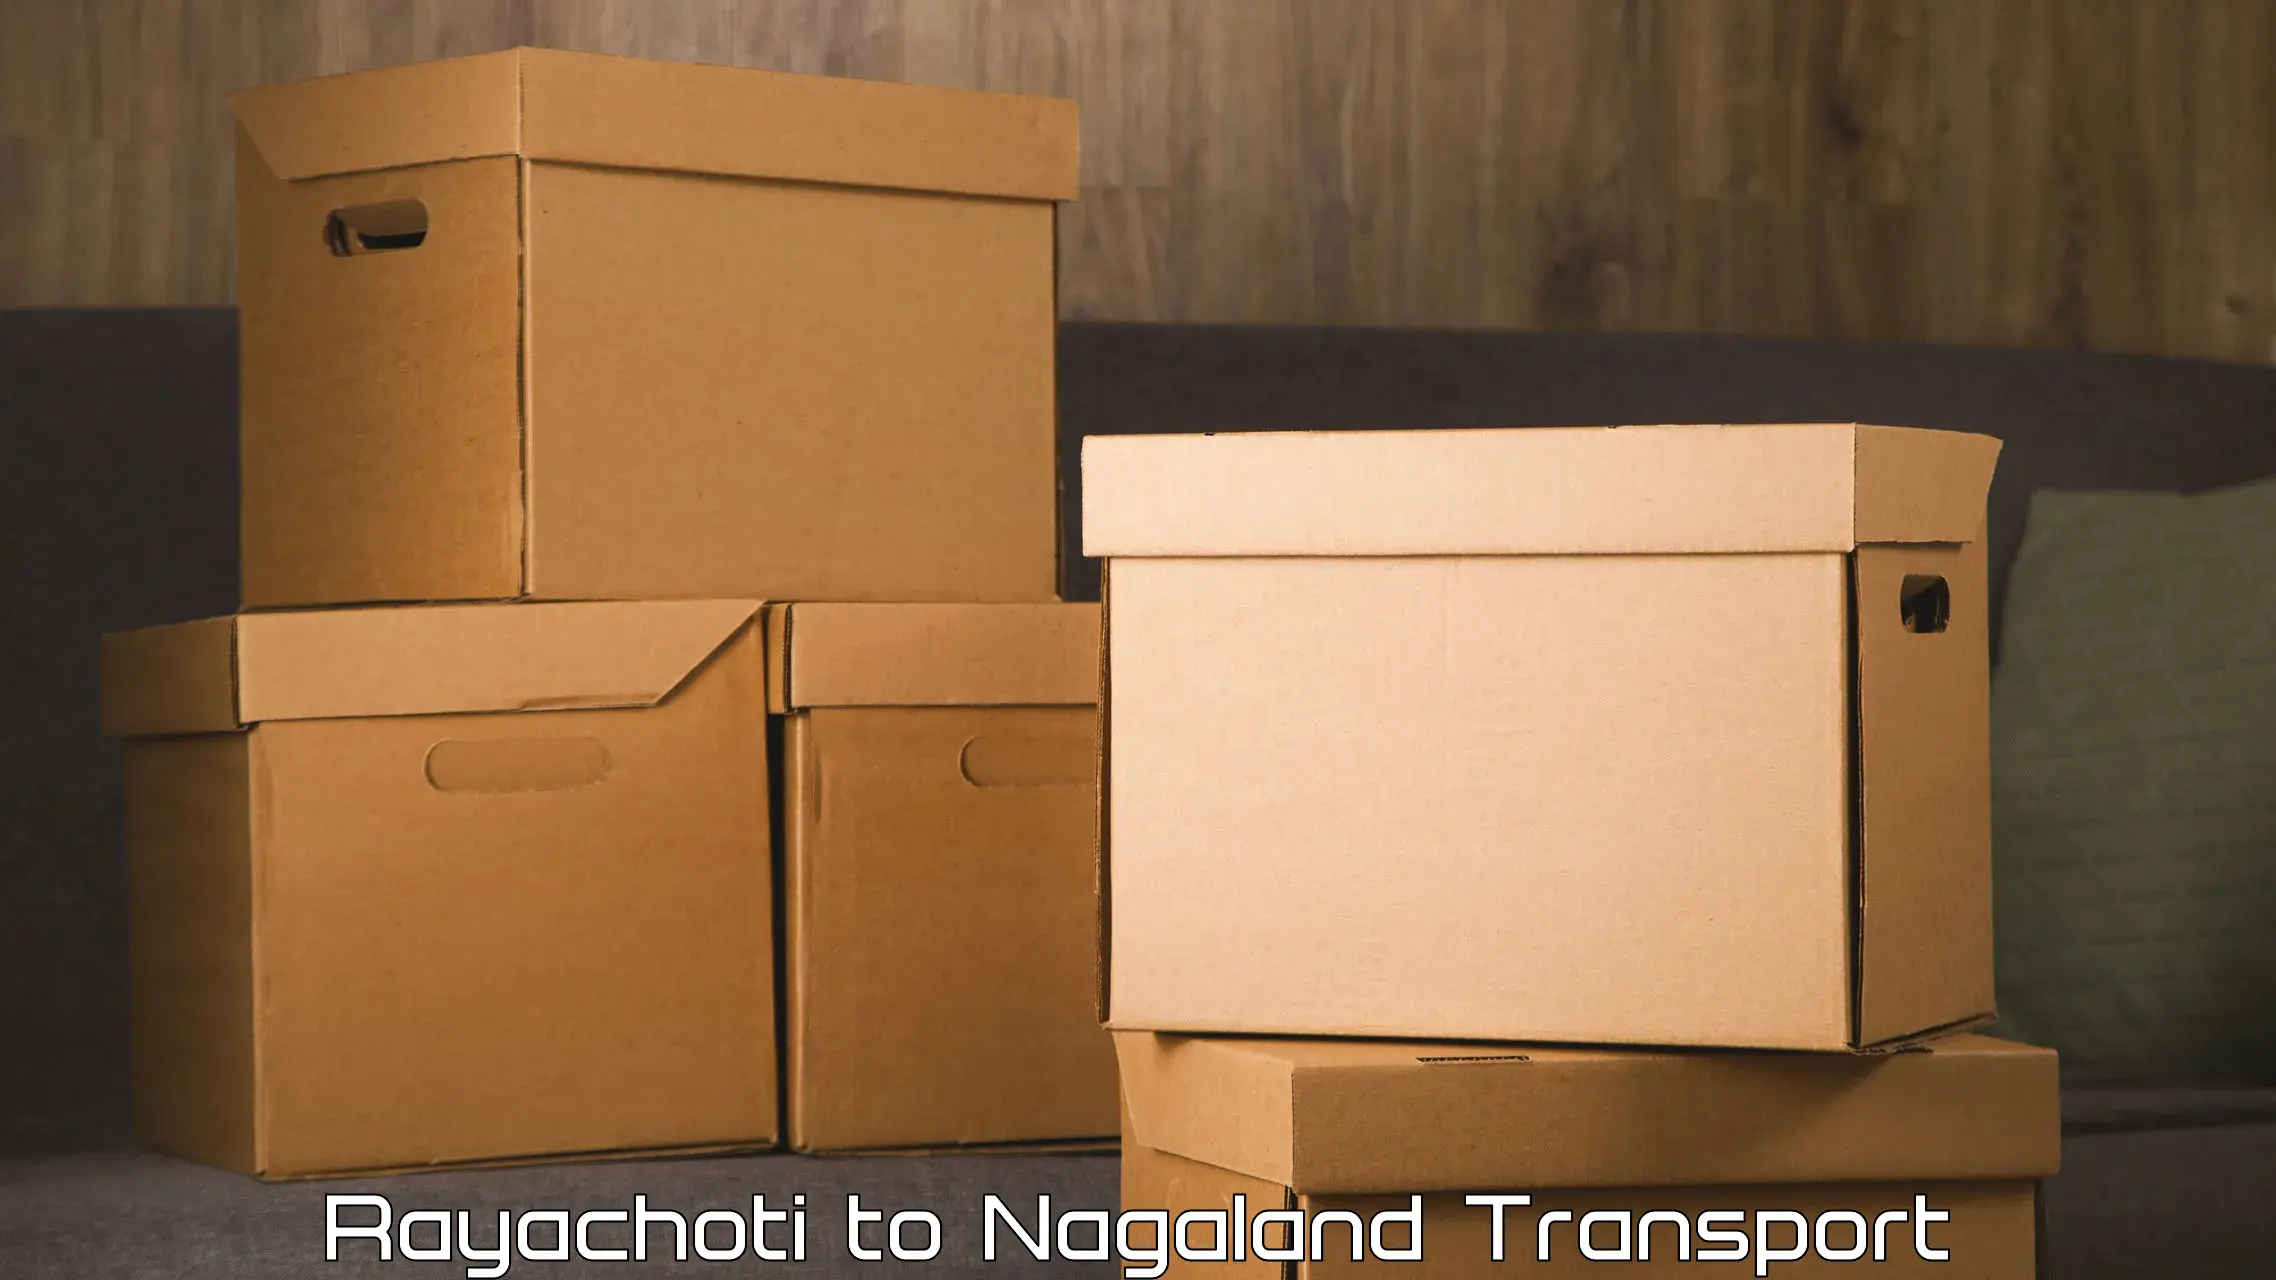 Lorry transport service Rayachoti to Nagaland